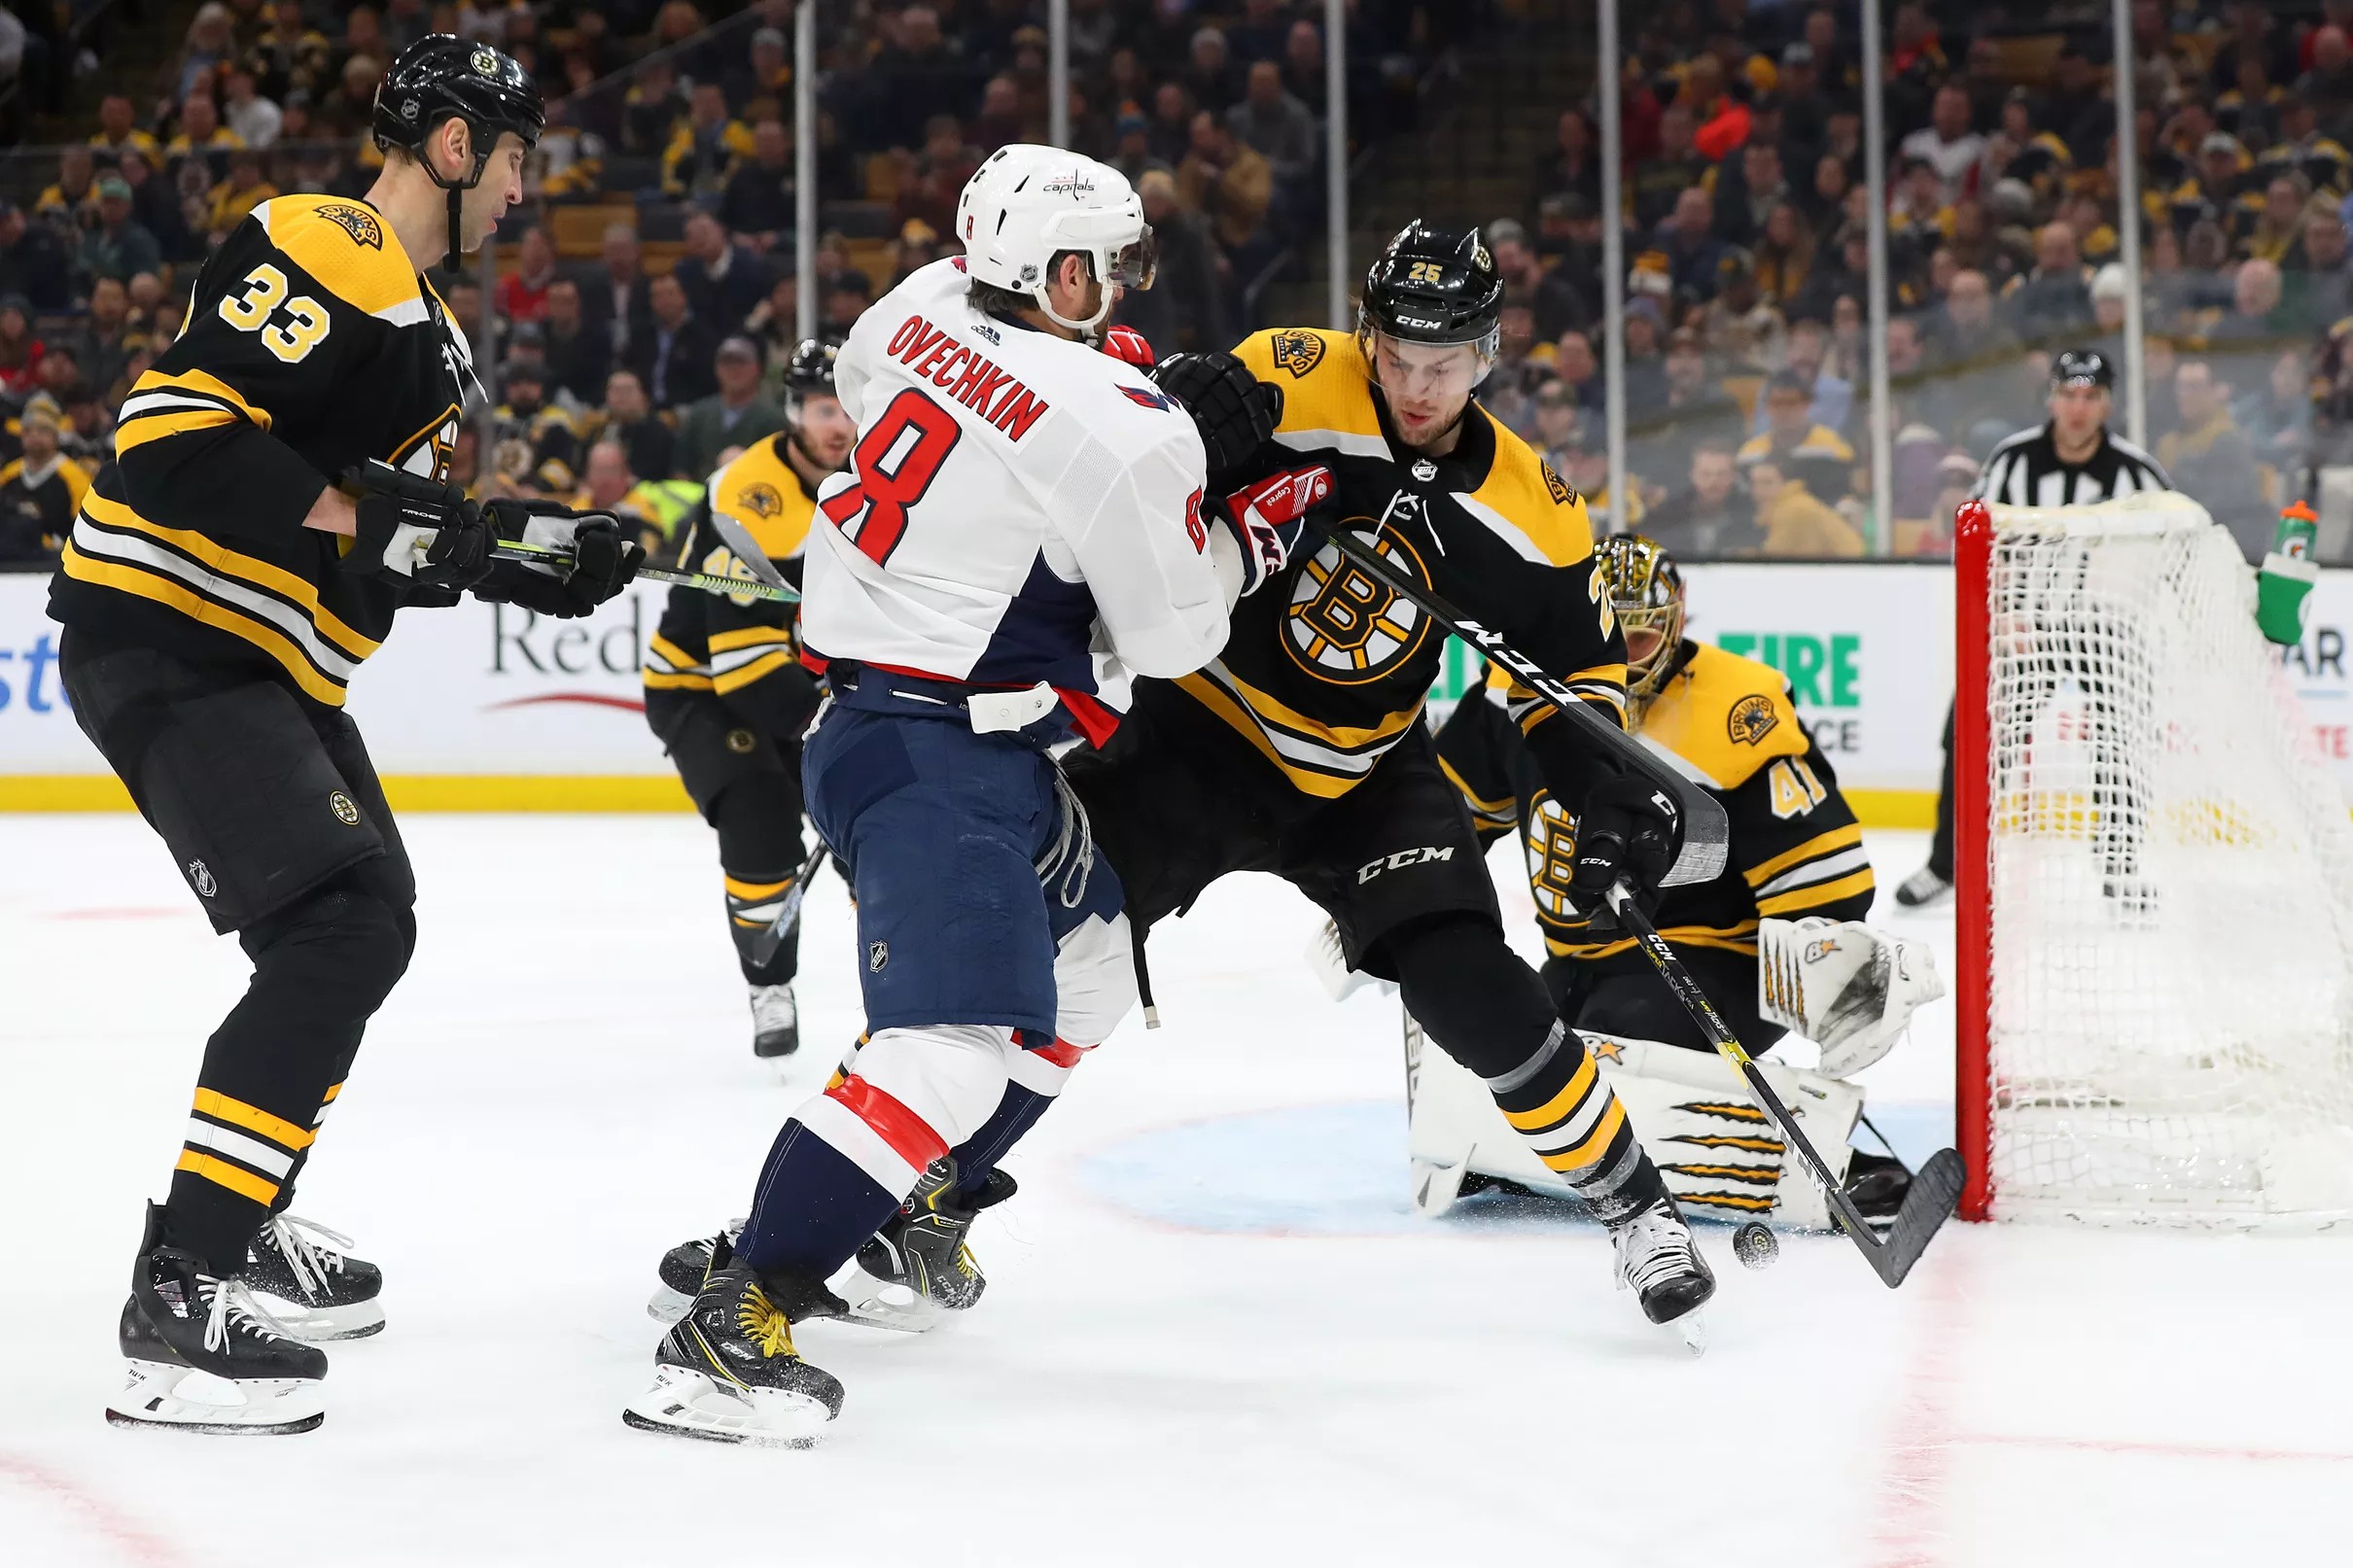 Caps vs. Bruins Recap: Capitals continue to haunt Bruins with 4-2 win